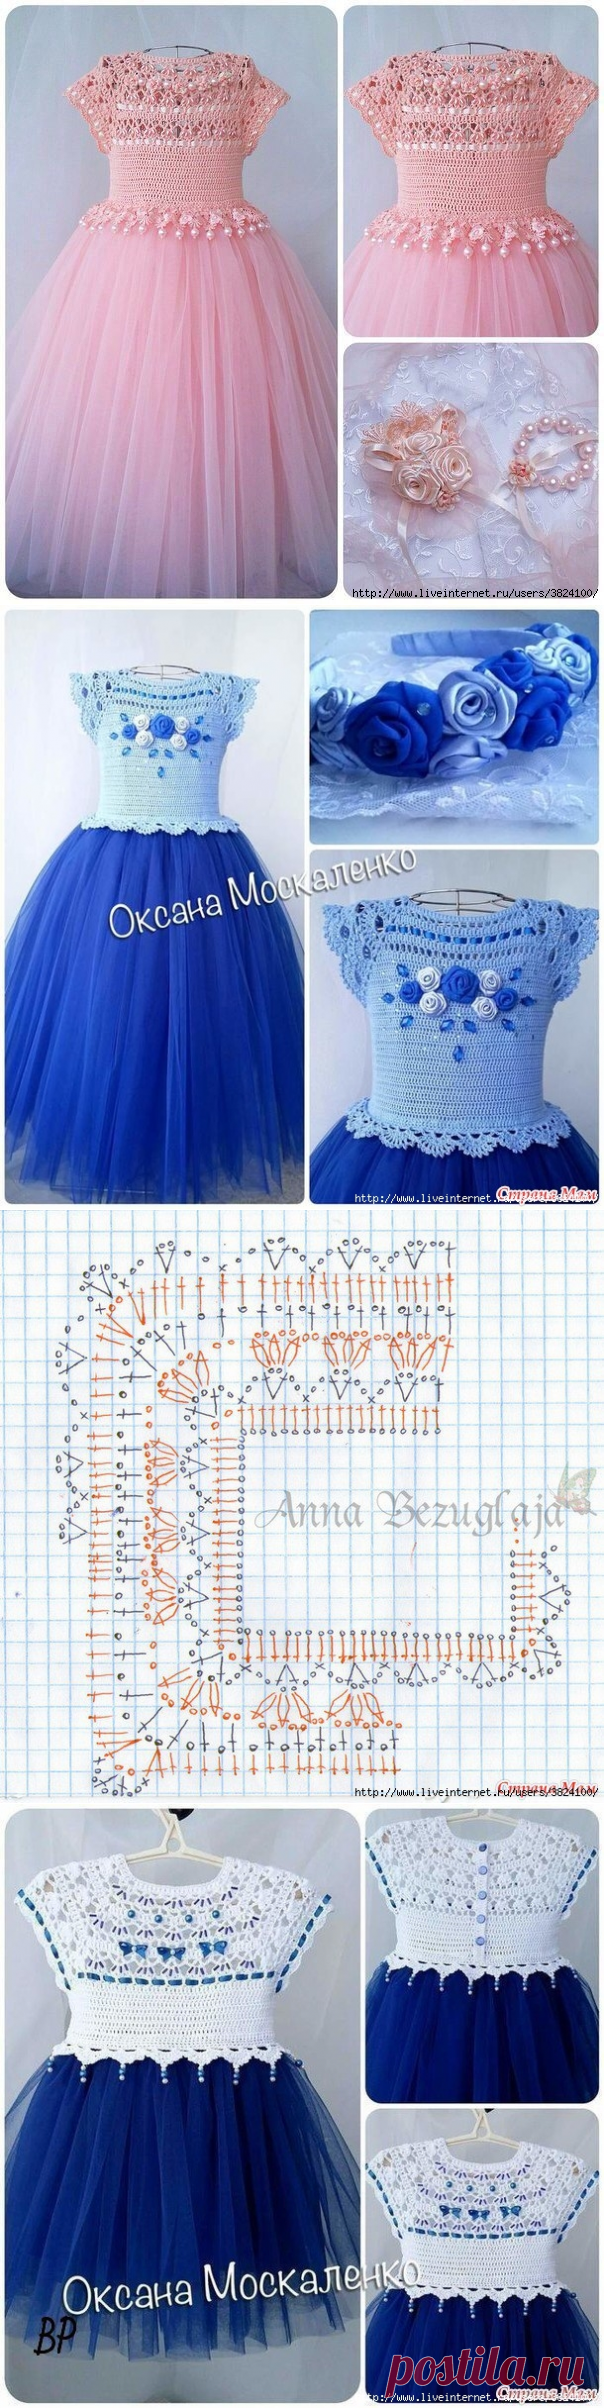 Нарядные праздничные платья для девочки от Оксаны Москаленко - схема кокетки прилагается